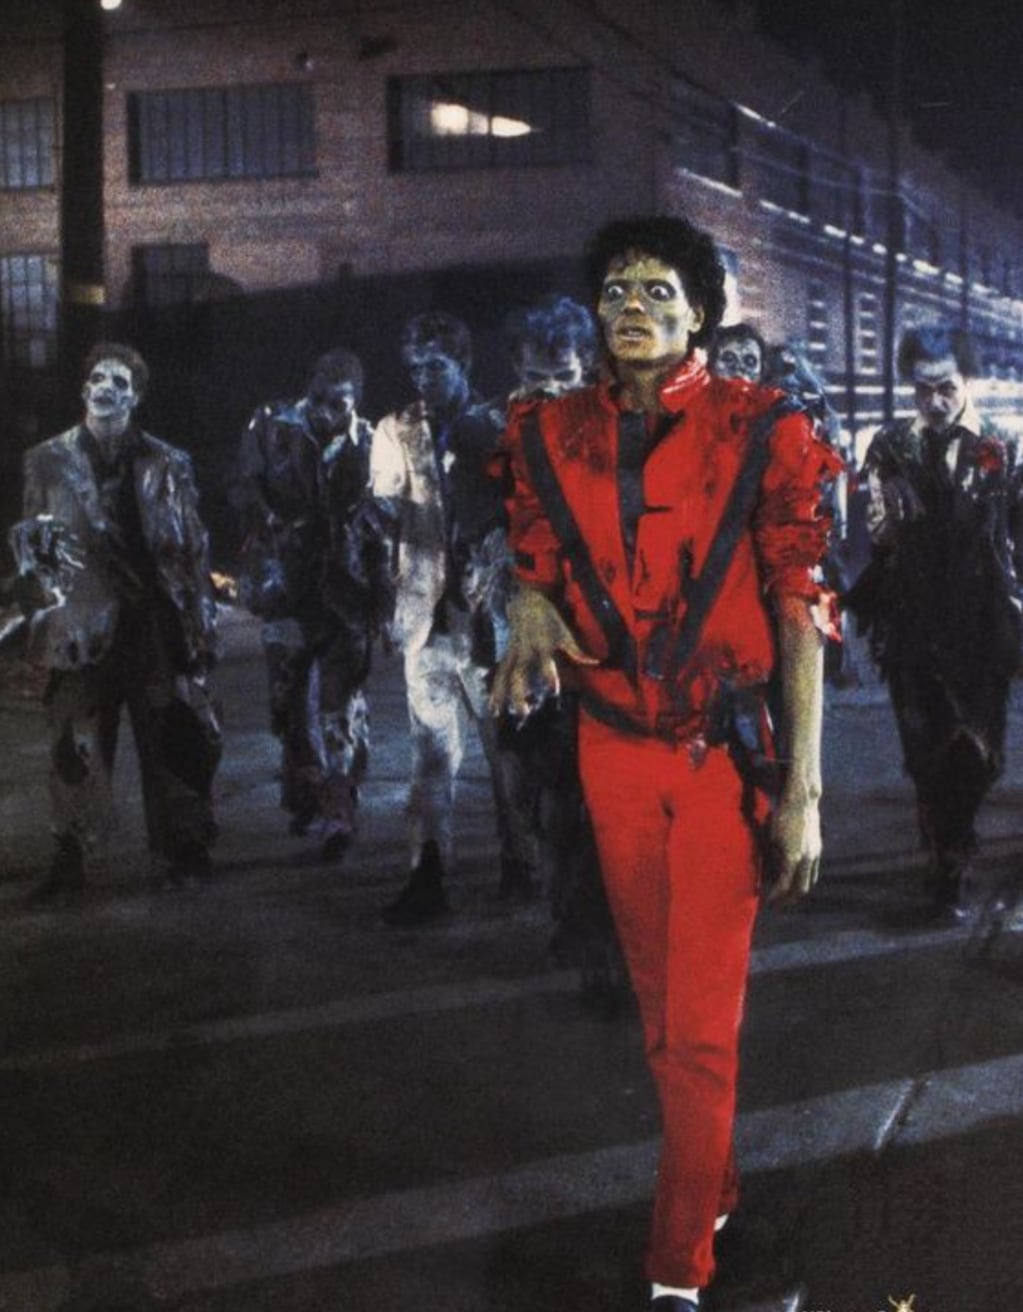 Vestuarios y maquillaje fueron parte del asombro que generó "Thriller".